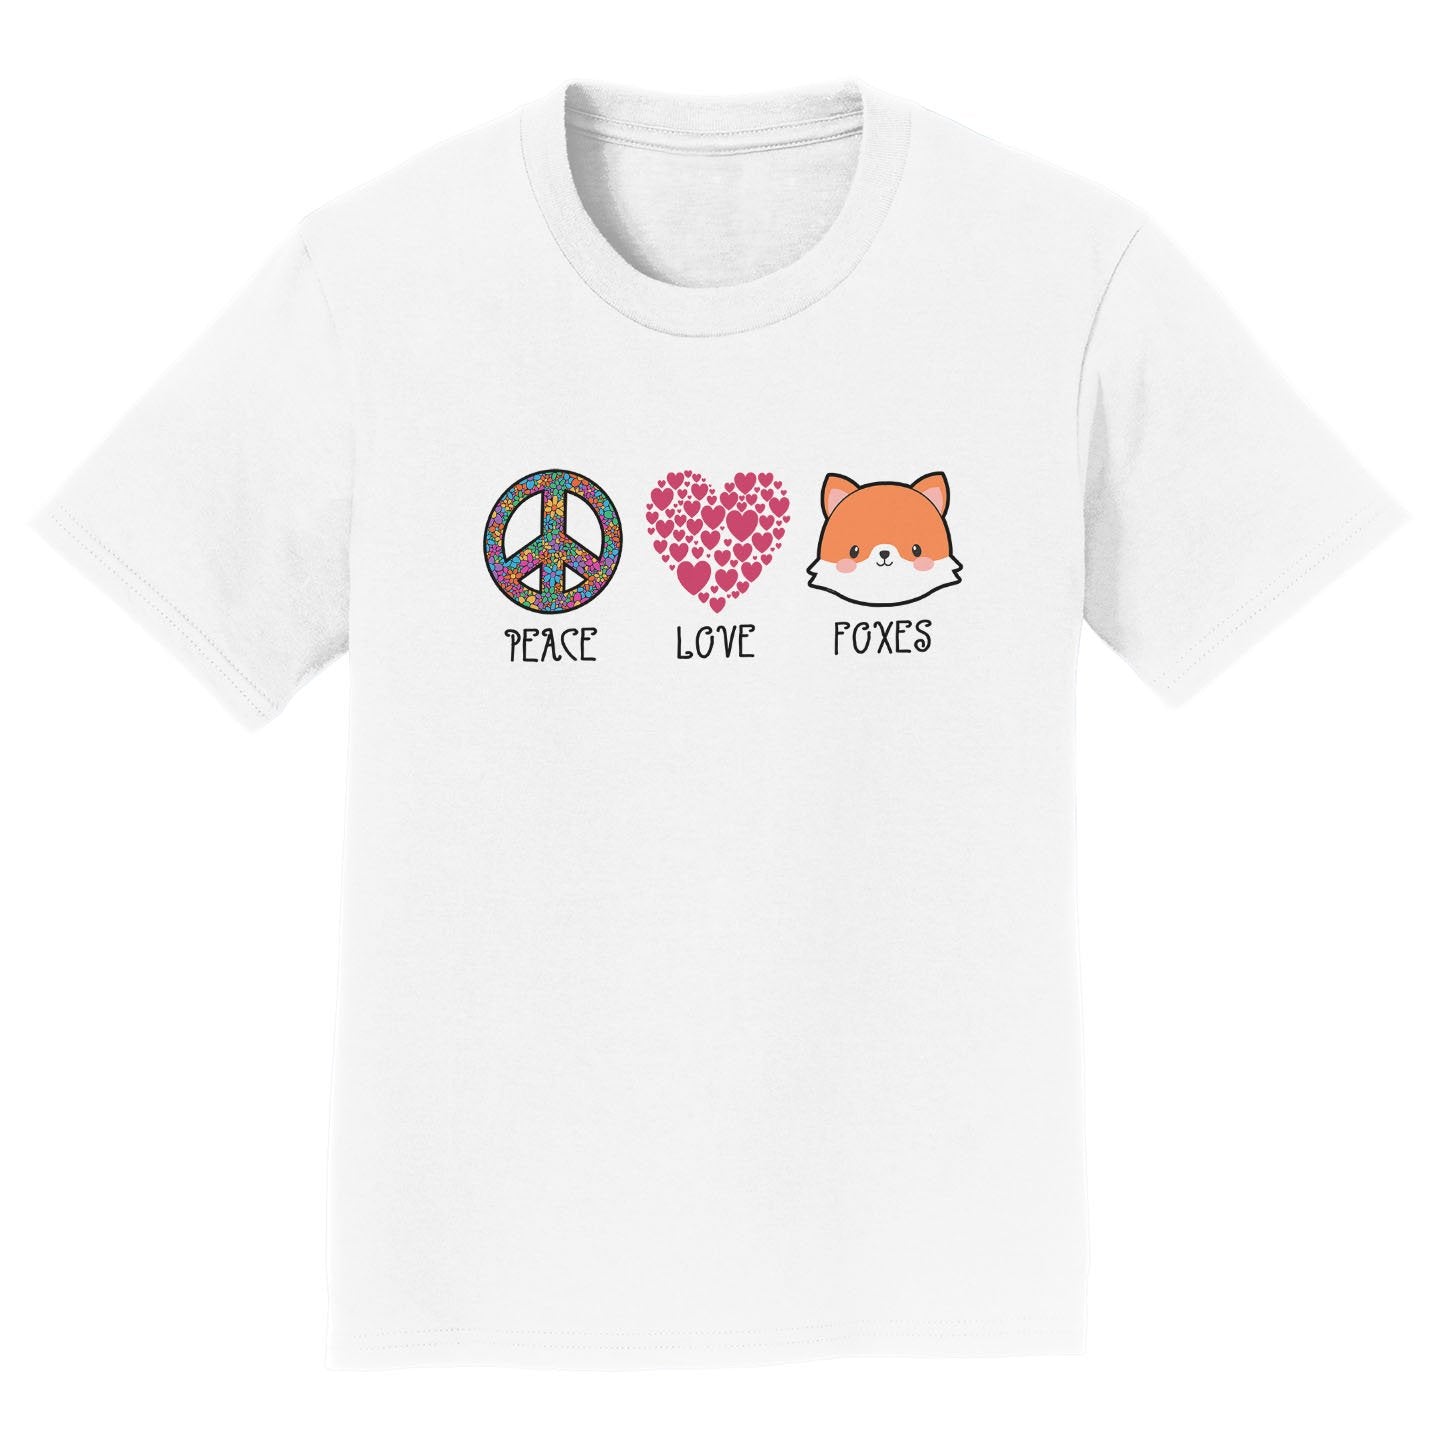 Peace Love Foxes - Kids' Unisex T-Shirt